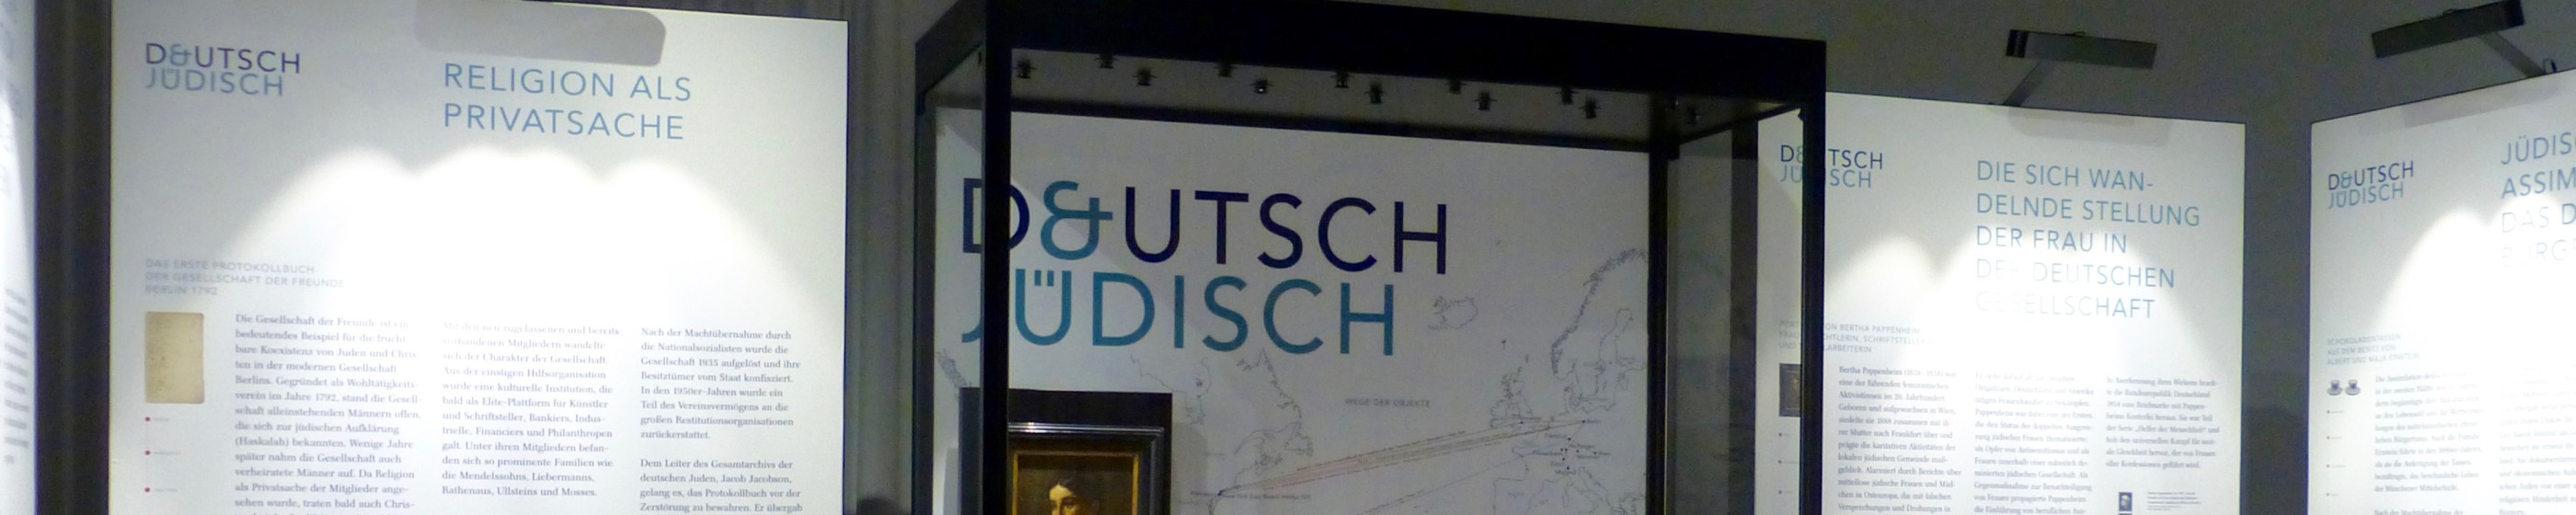 2-deutsch-u-juedisch-deutsches-auswandererhaus-copyright-deutsches-auswandererhaus